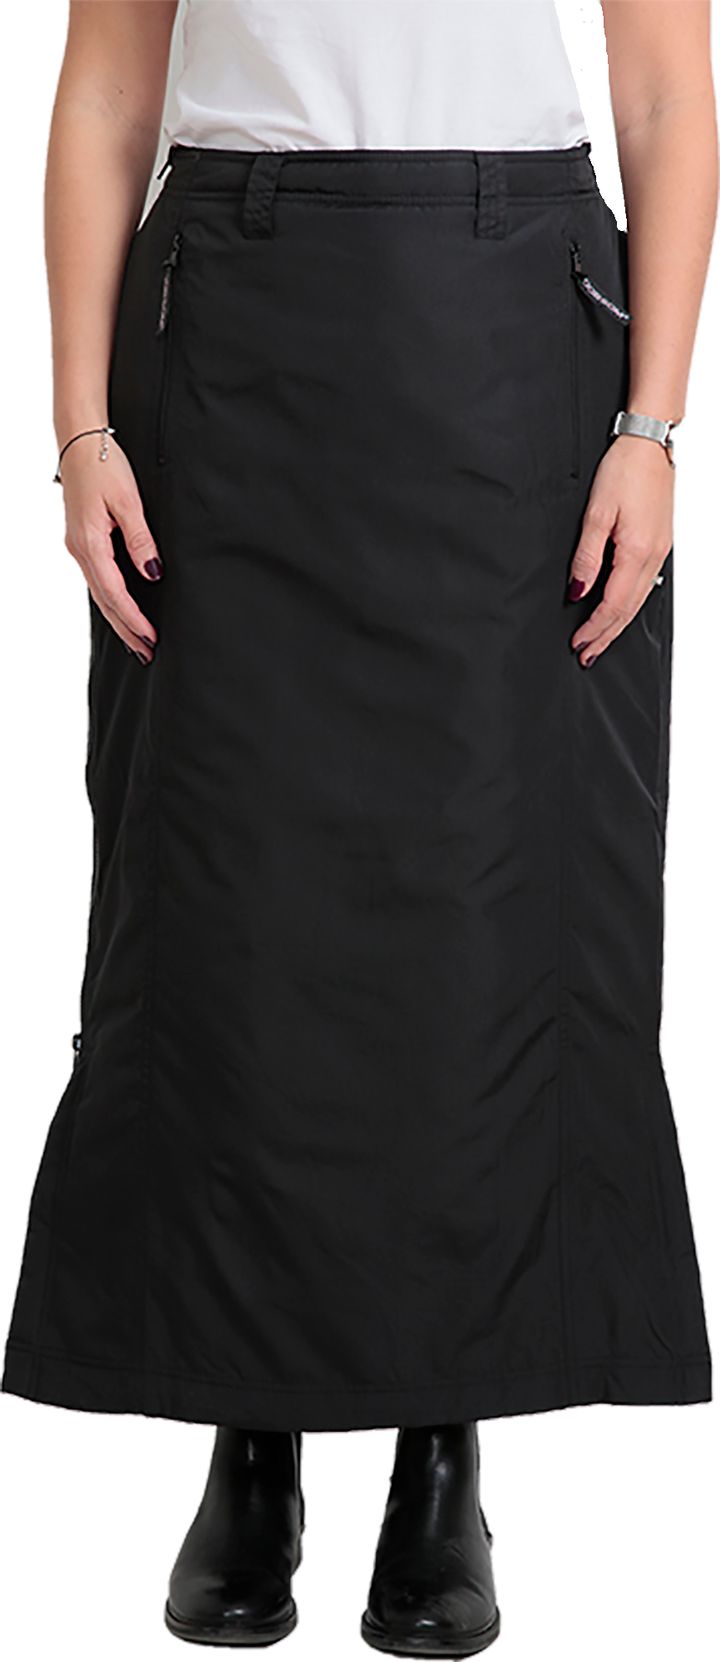 Dobsom Women's Comfort Thermo Skirt Black Dobsom